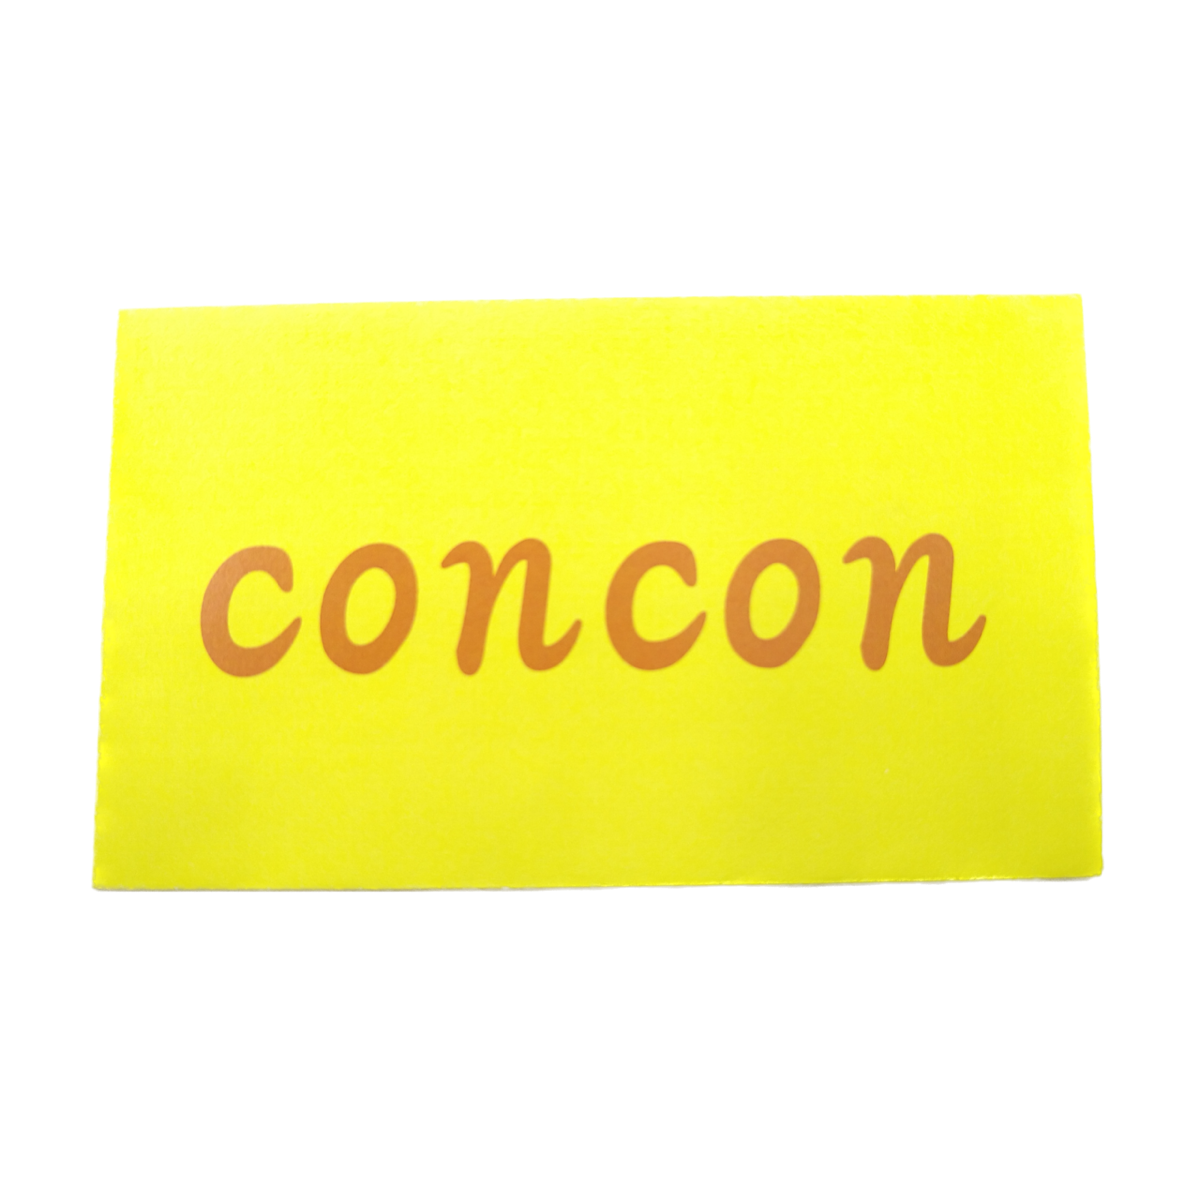 concon